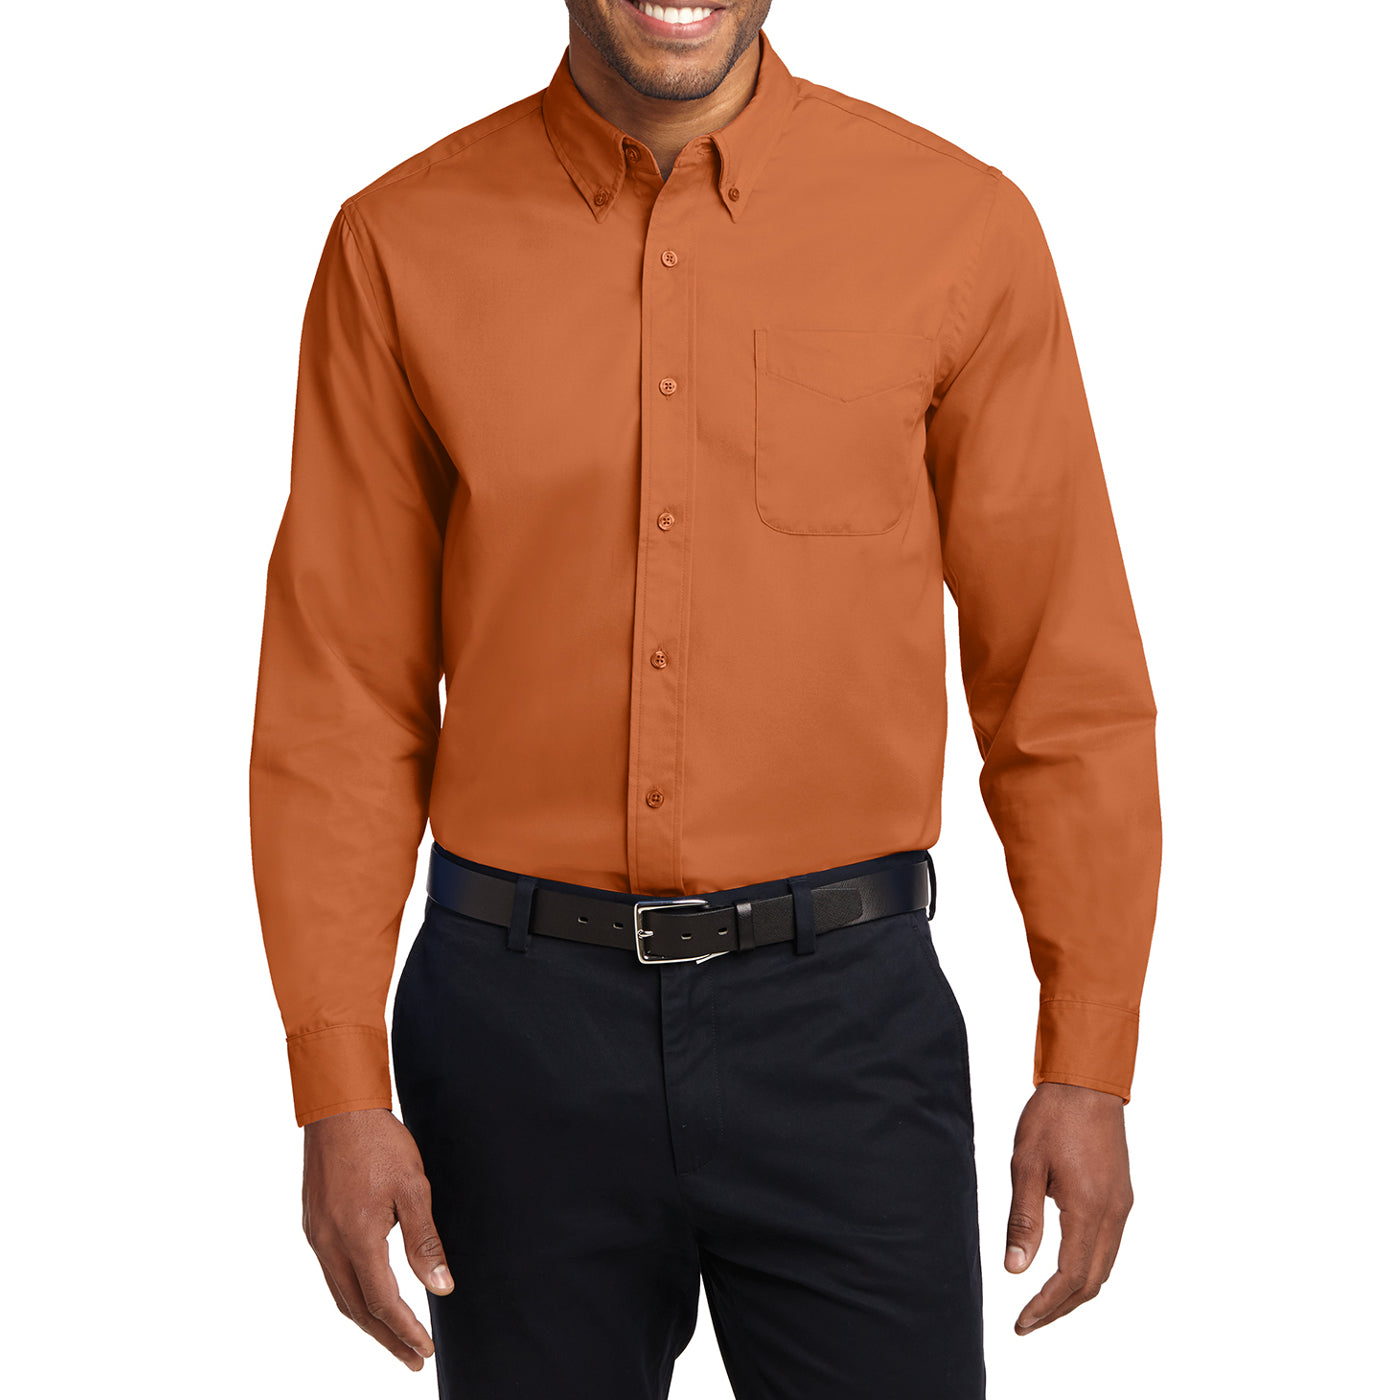 Men's Long Sleeve Easy Care Shirt - Texas Orange/ Light Stone - Front